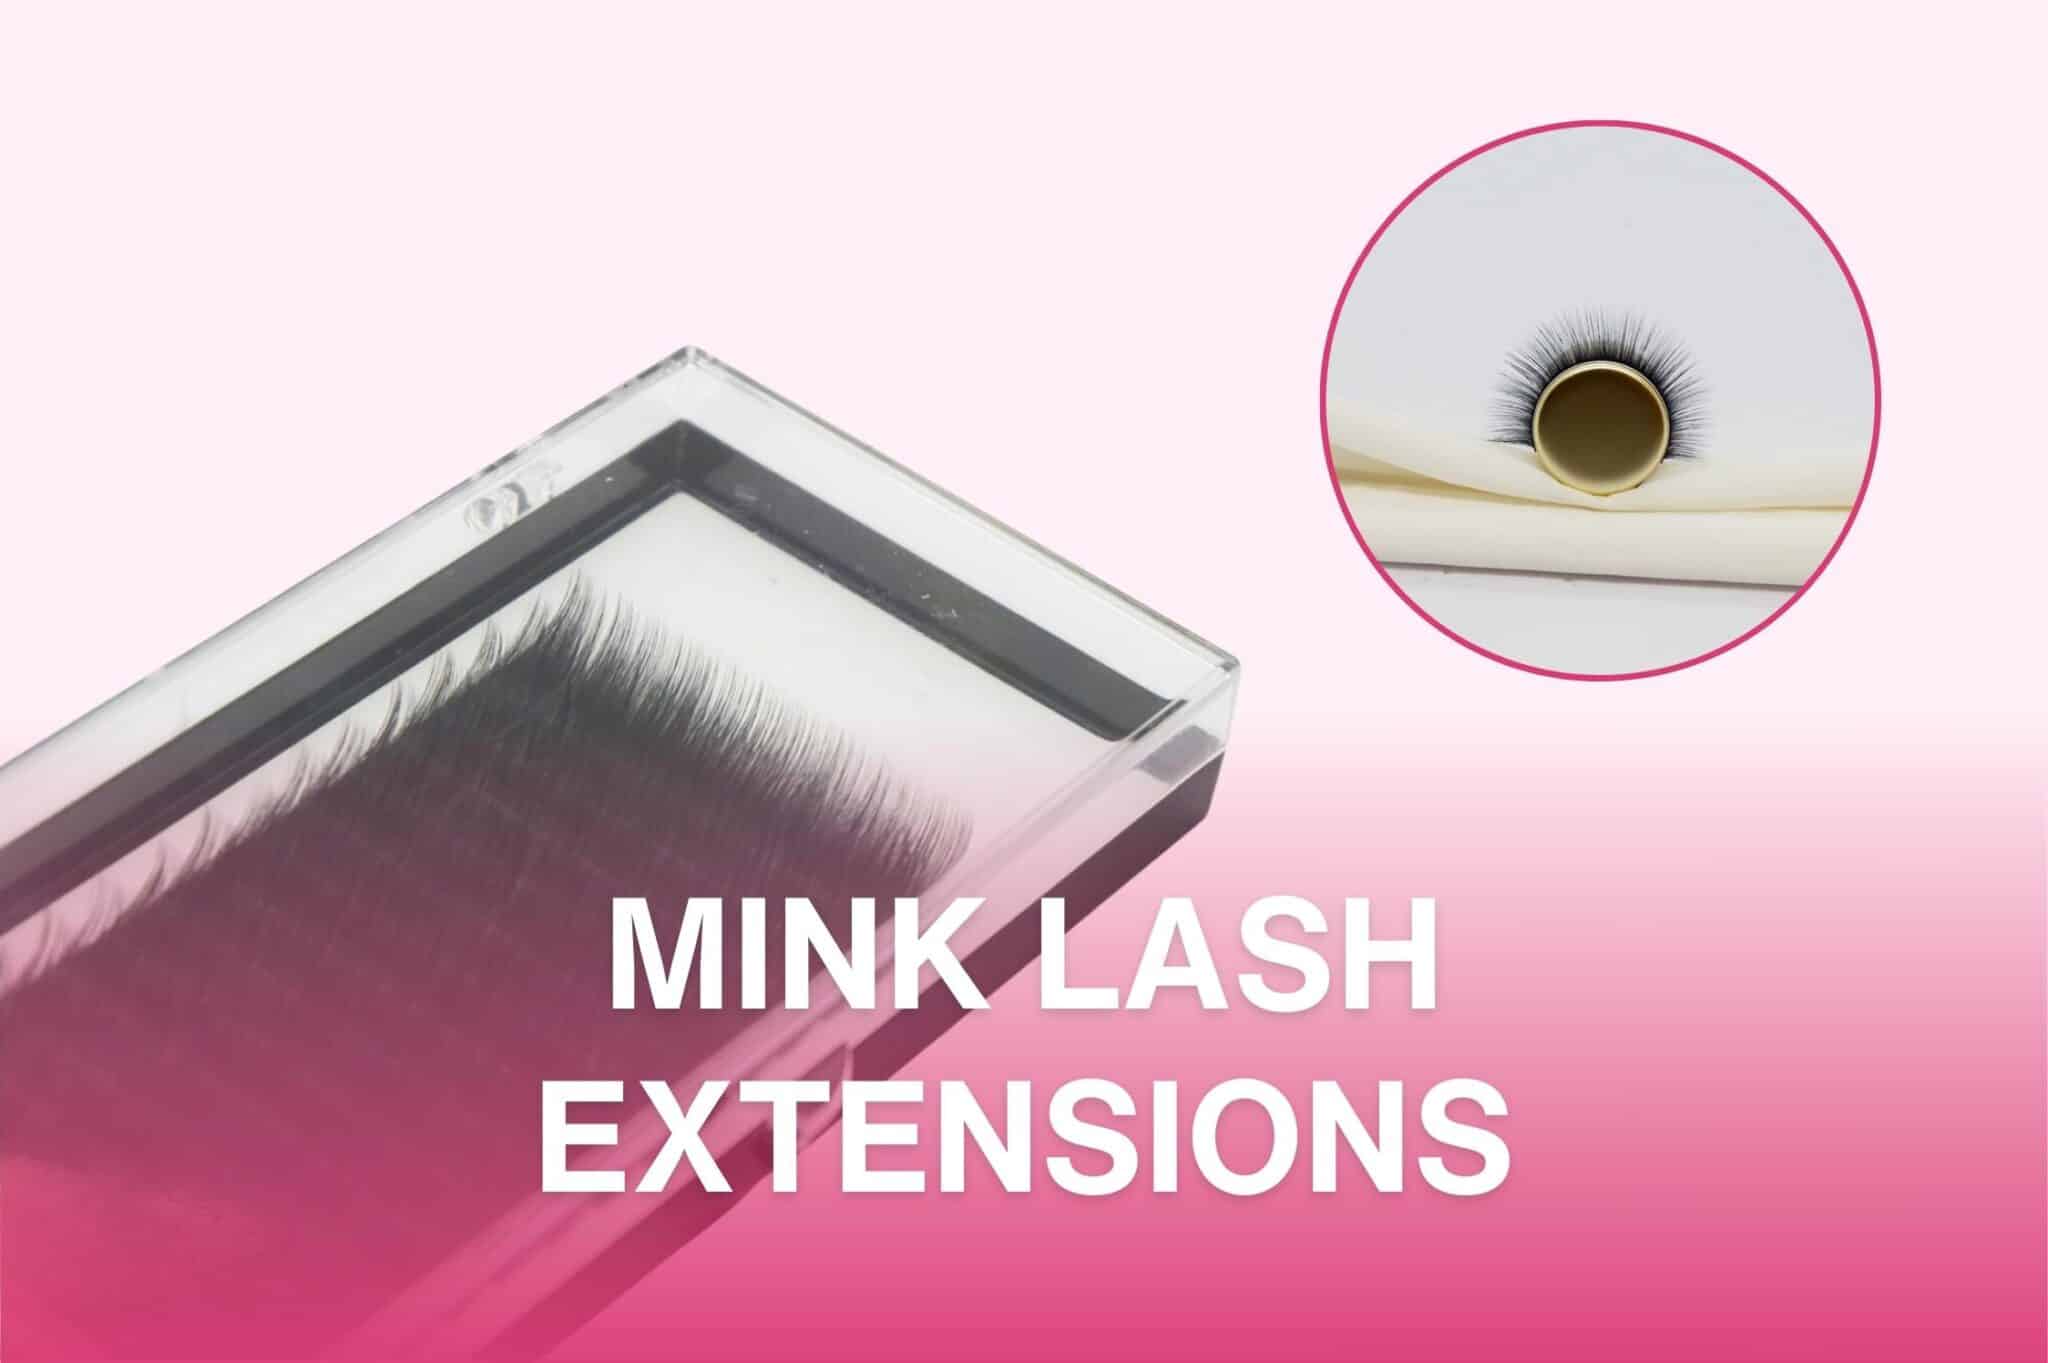 Mink Lash Extensions tag